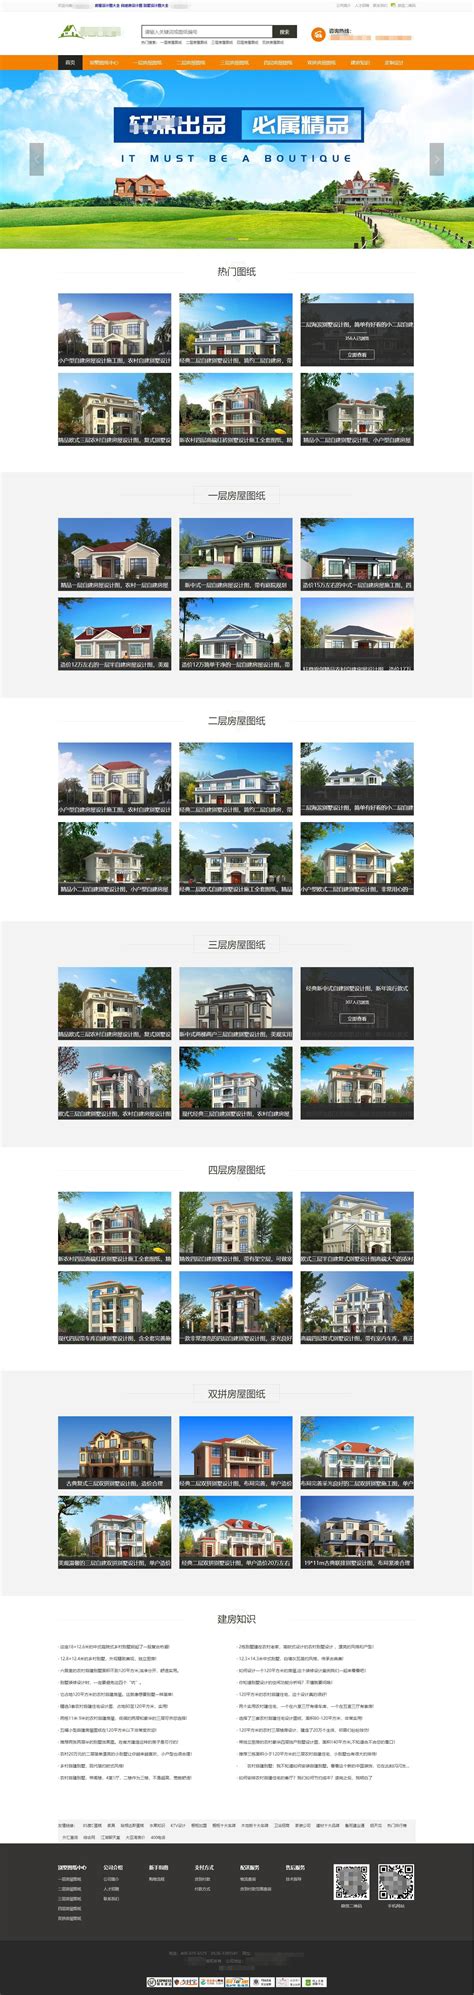 房屋设计图纸 房产设计图纸网站销售商城模板-网站模板中心-云码素材